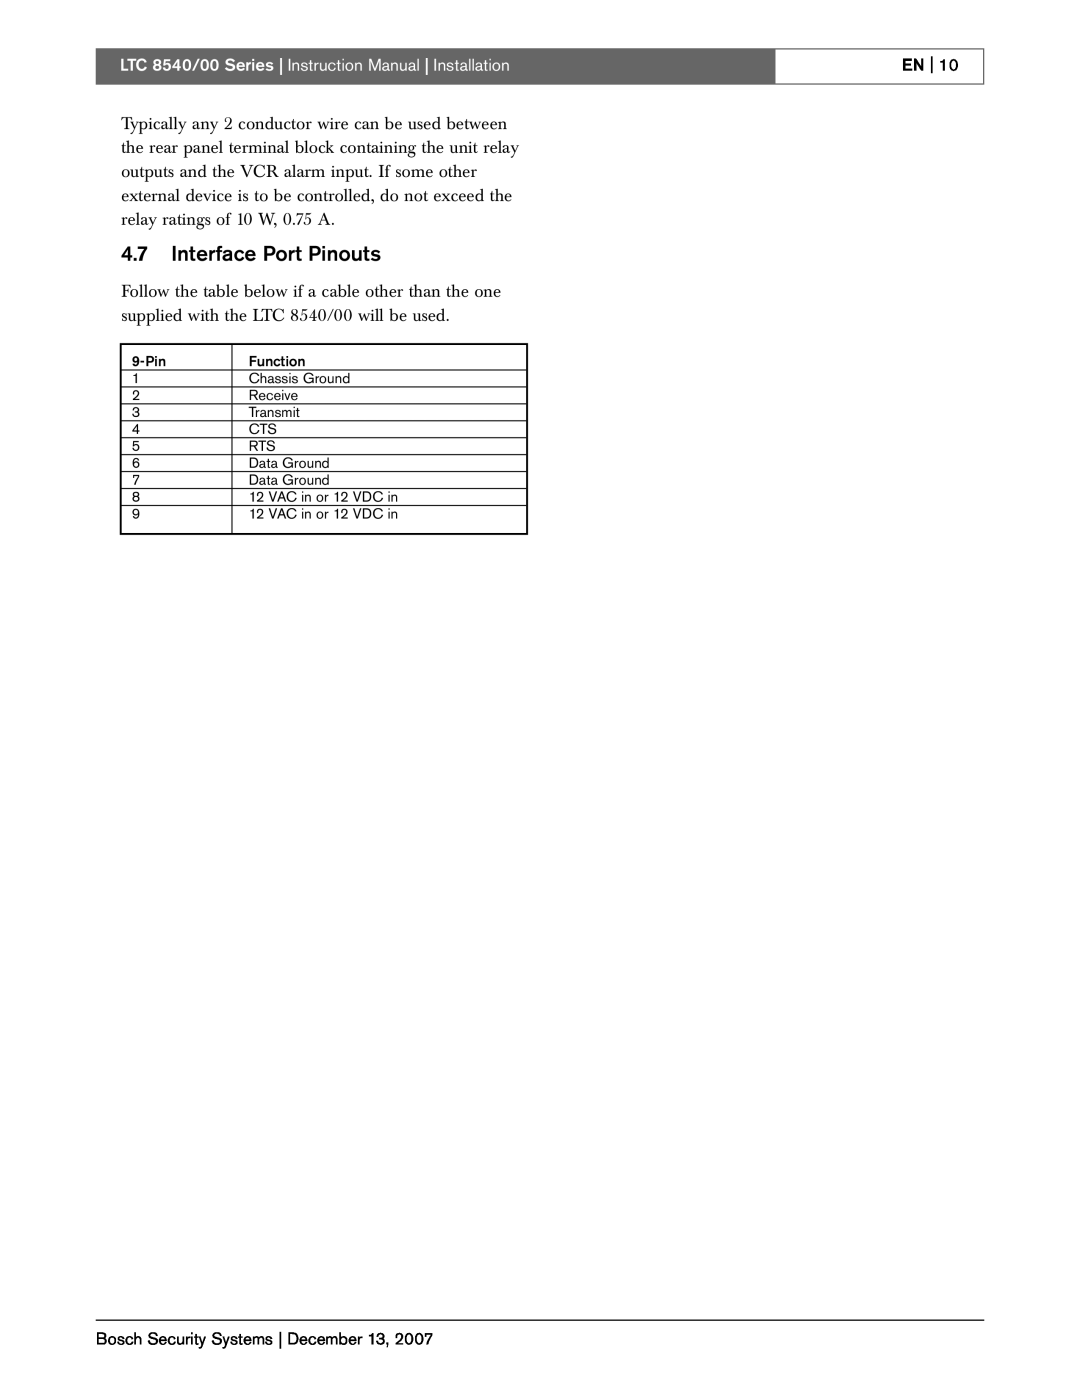 Bosch Appliances LTC 8540/00 instruction manual 4.7Interface Port Pinouts, En 